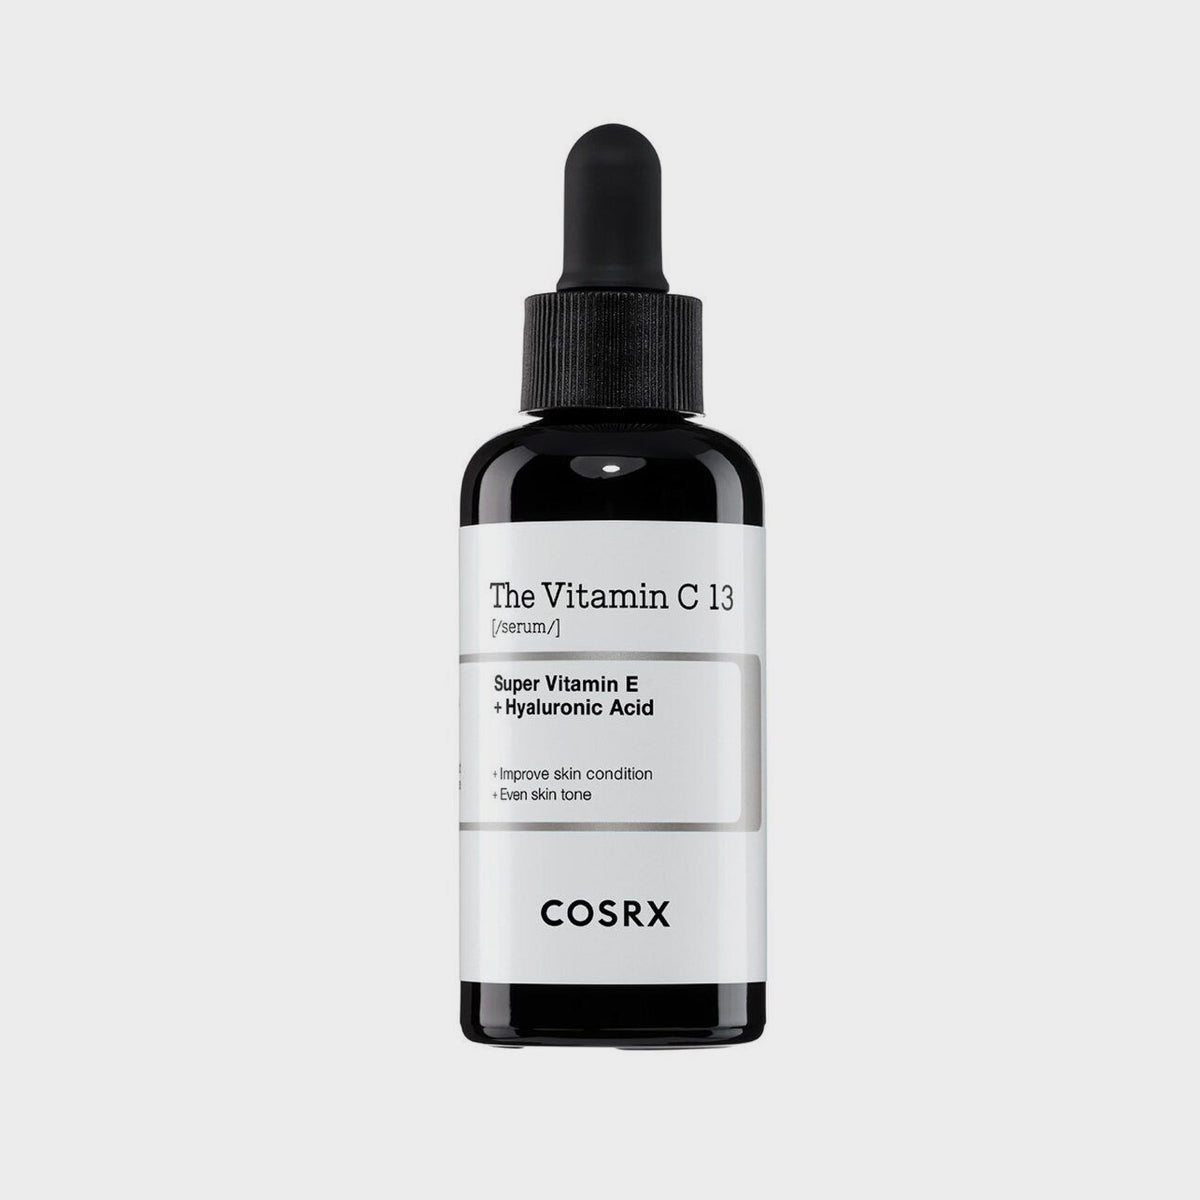 COSRX Le Sérum Vitamine C 13